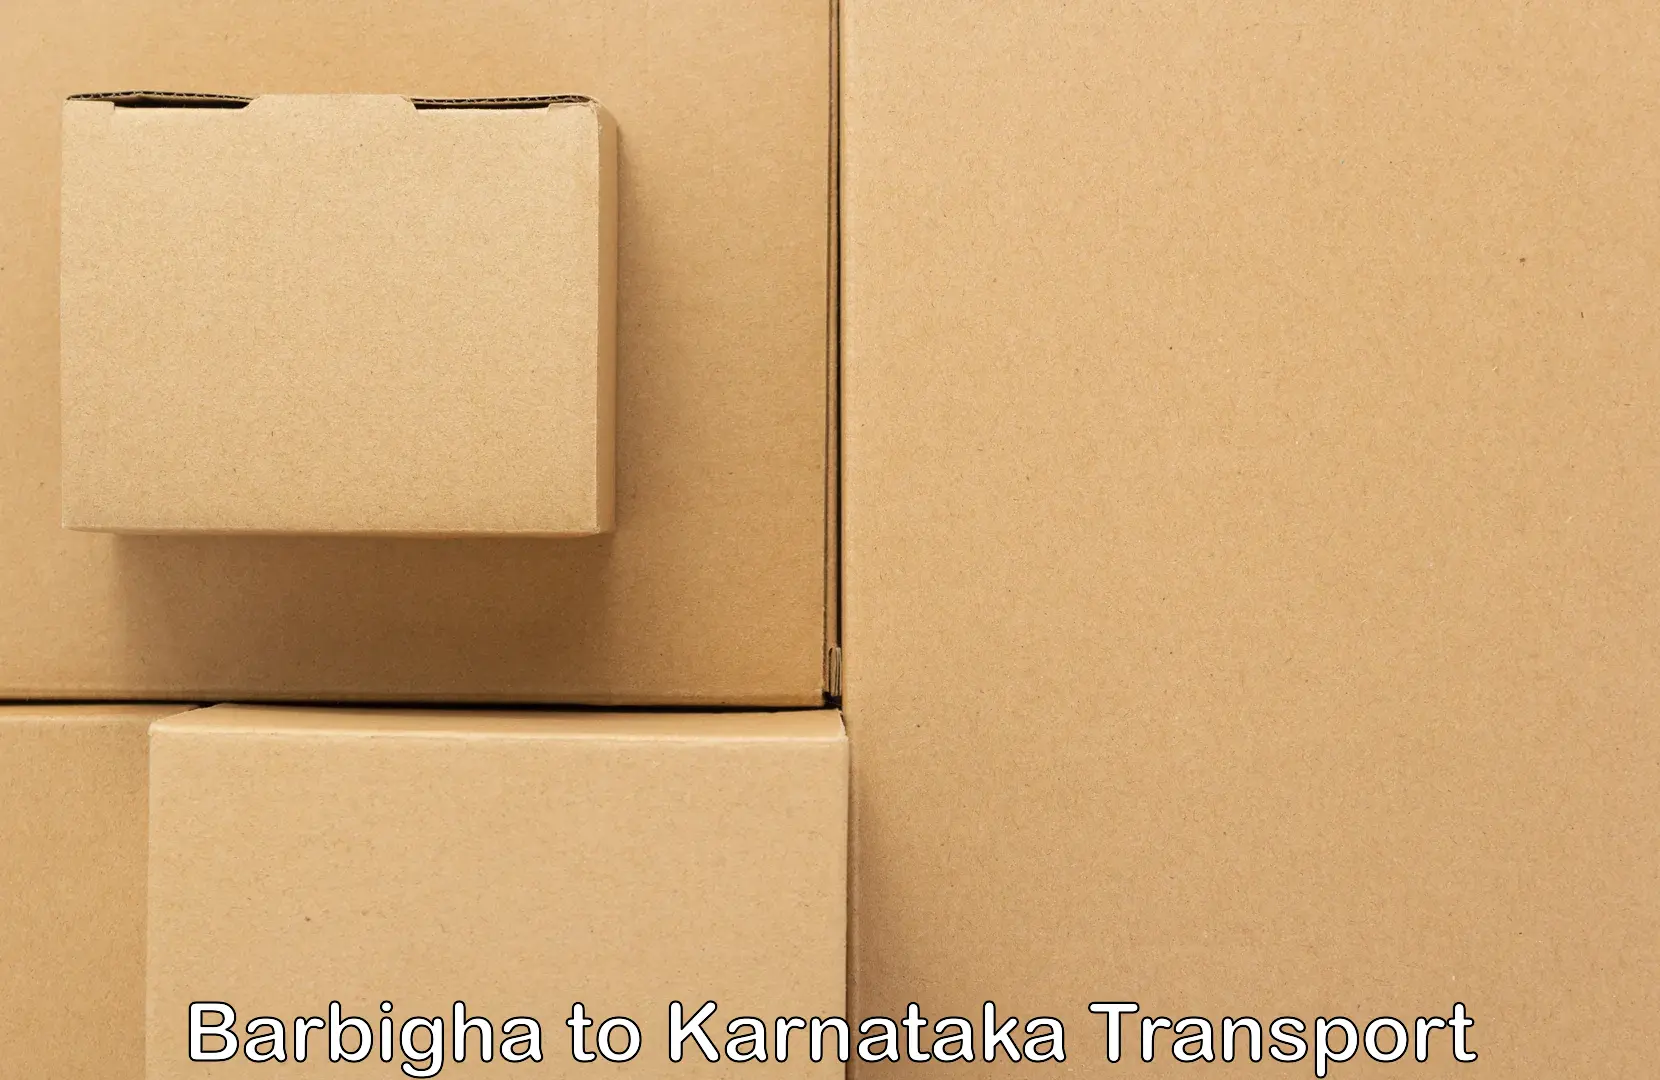 Bike shipping service Barbigha to Maramanahalli